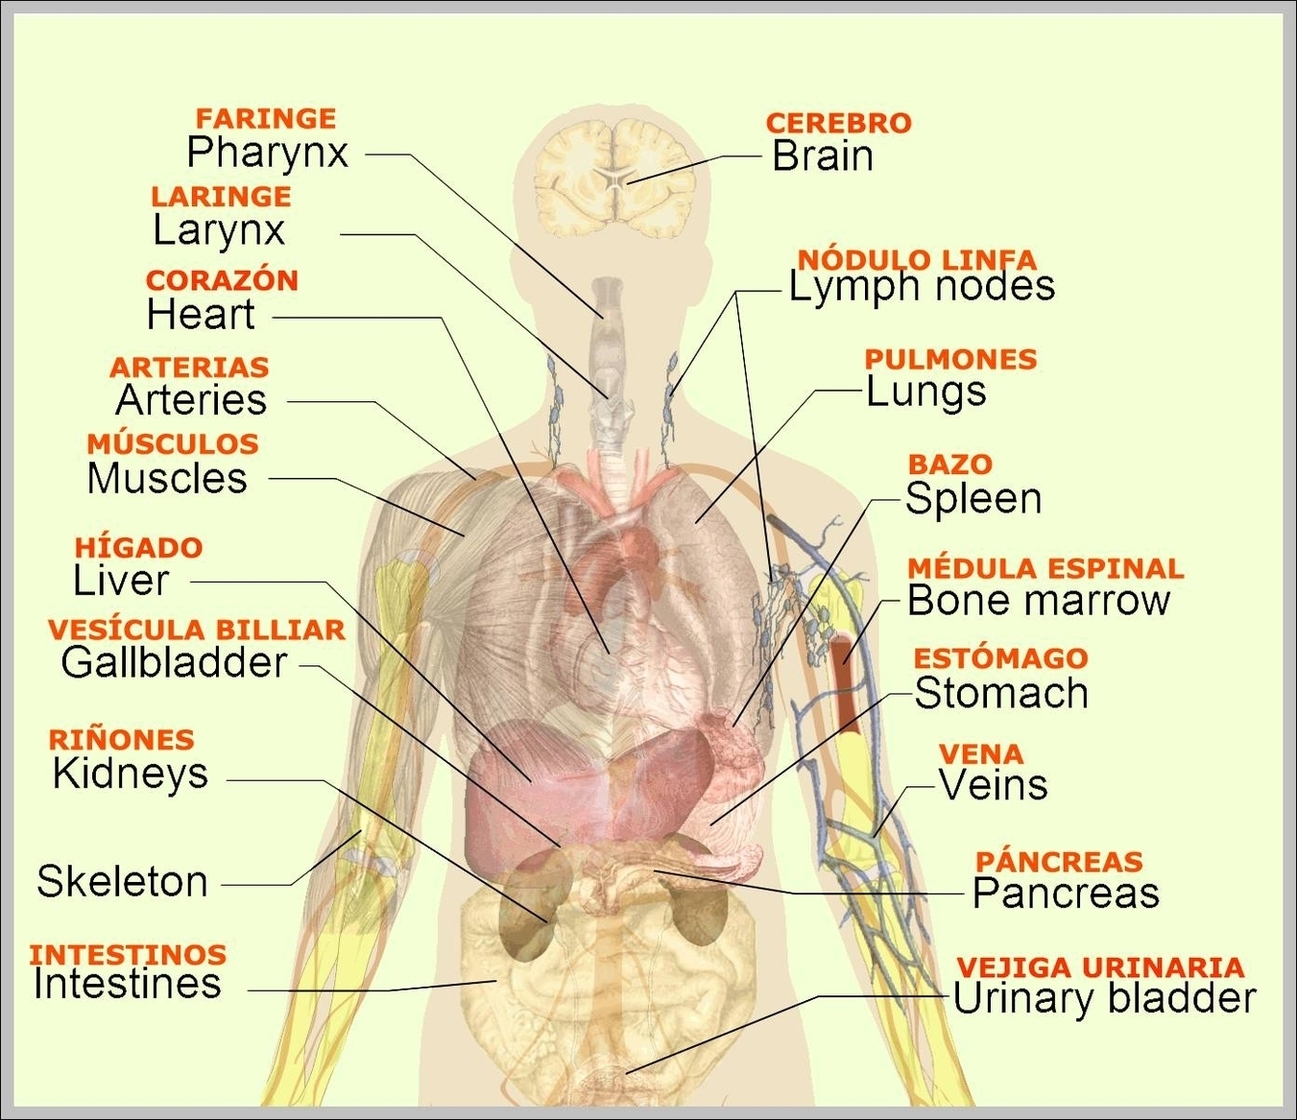 Human Body Layout Image